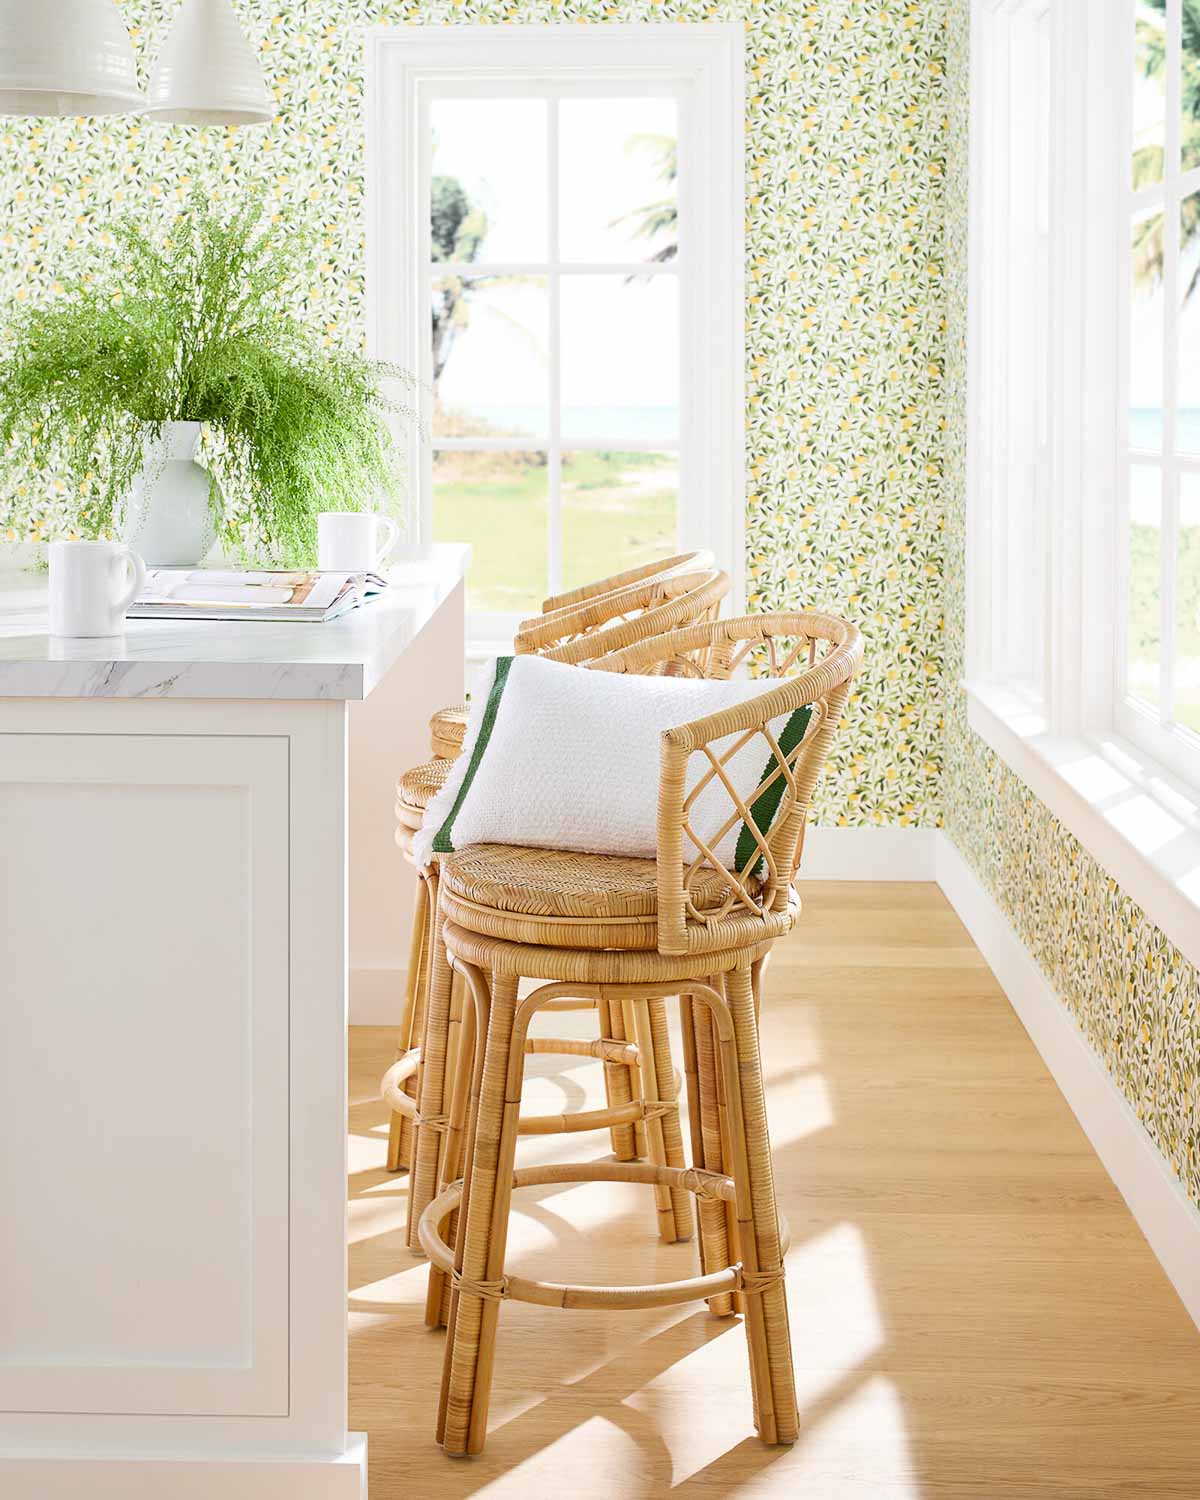 Lemon wallpaper in the kitchen